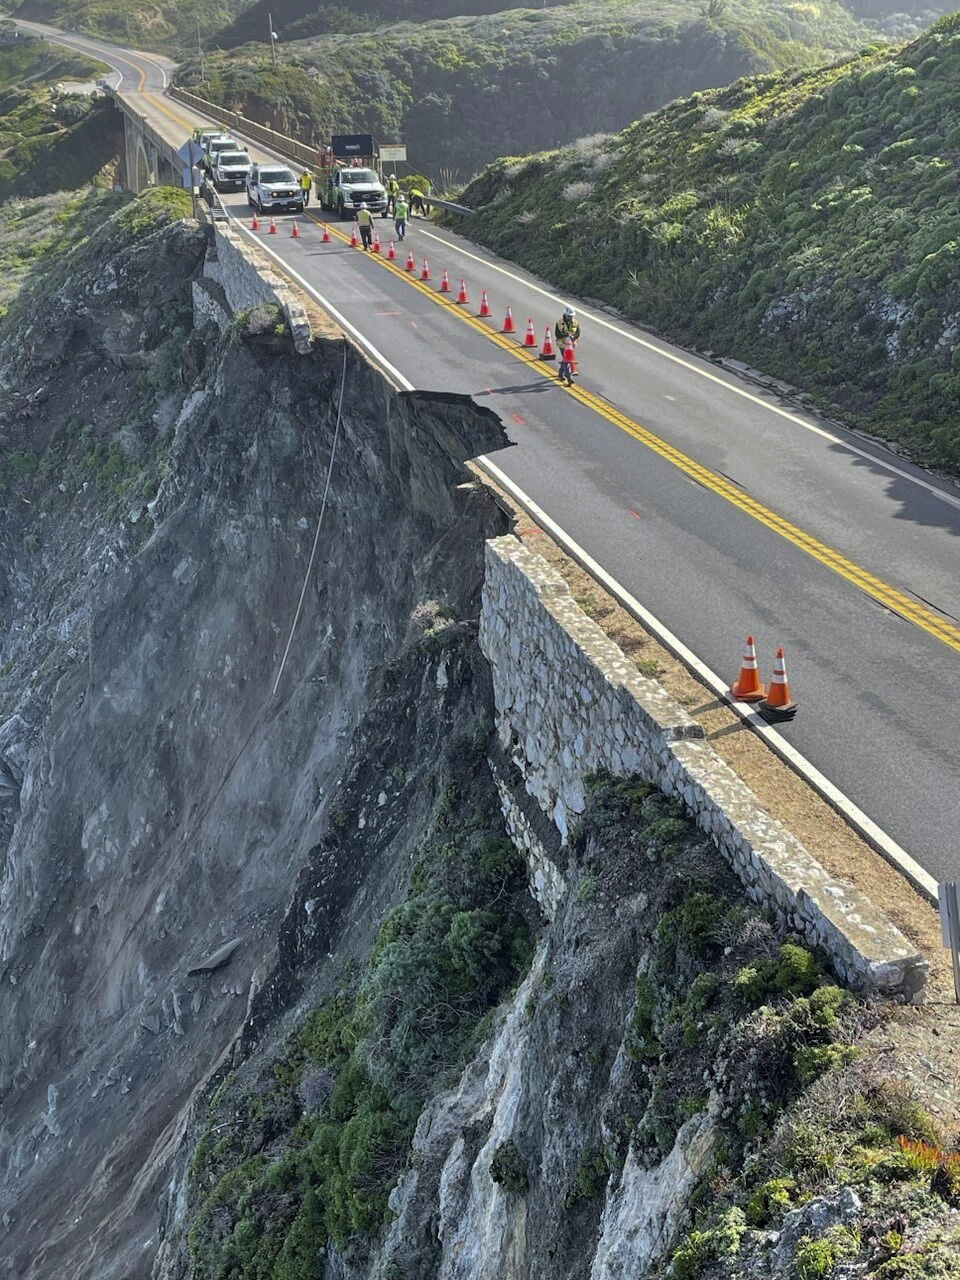 Road collapse near Big Sur